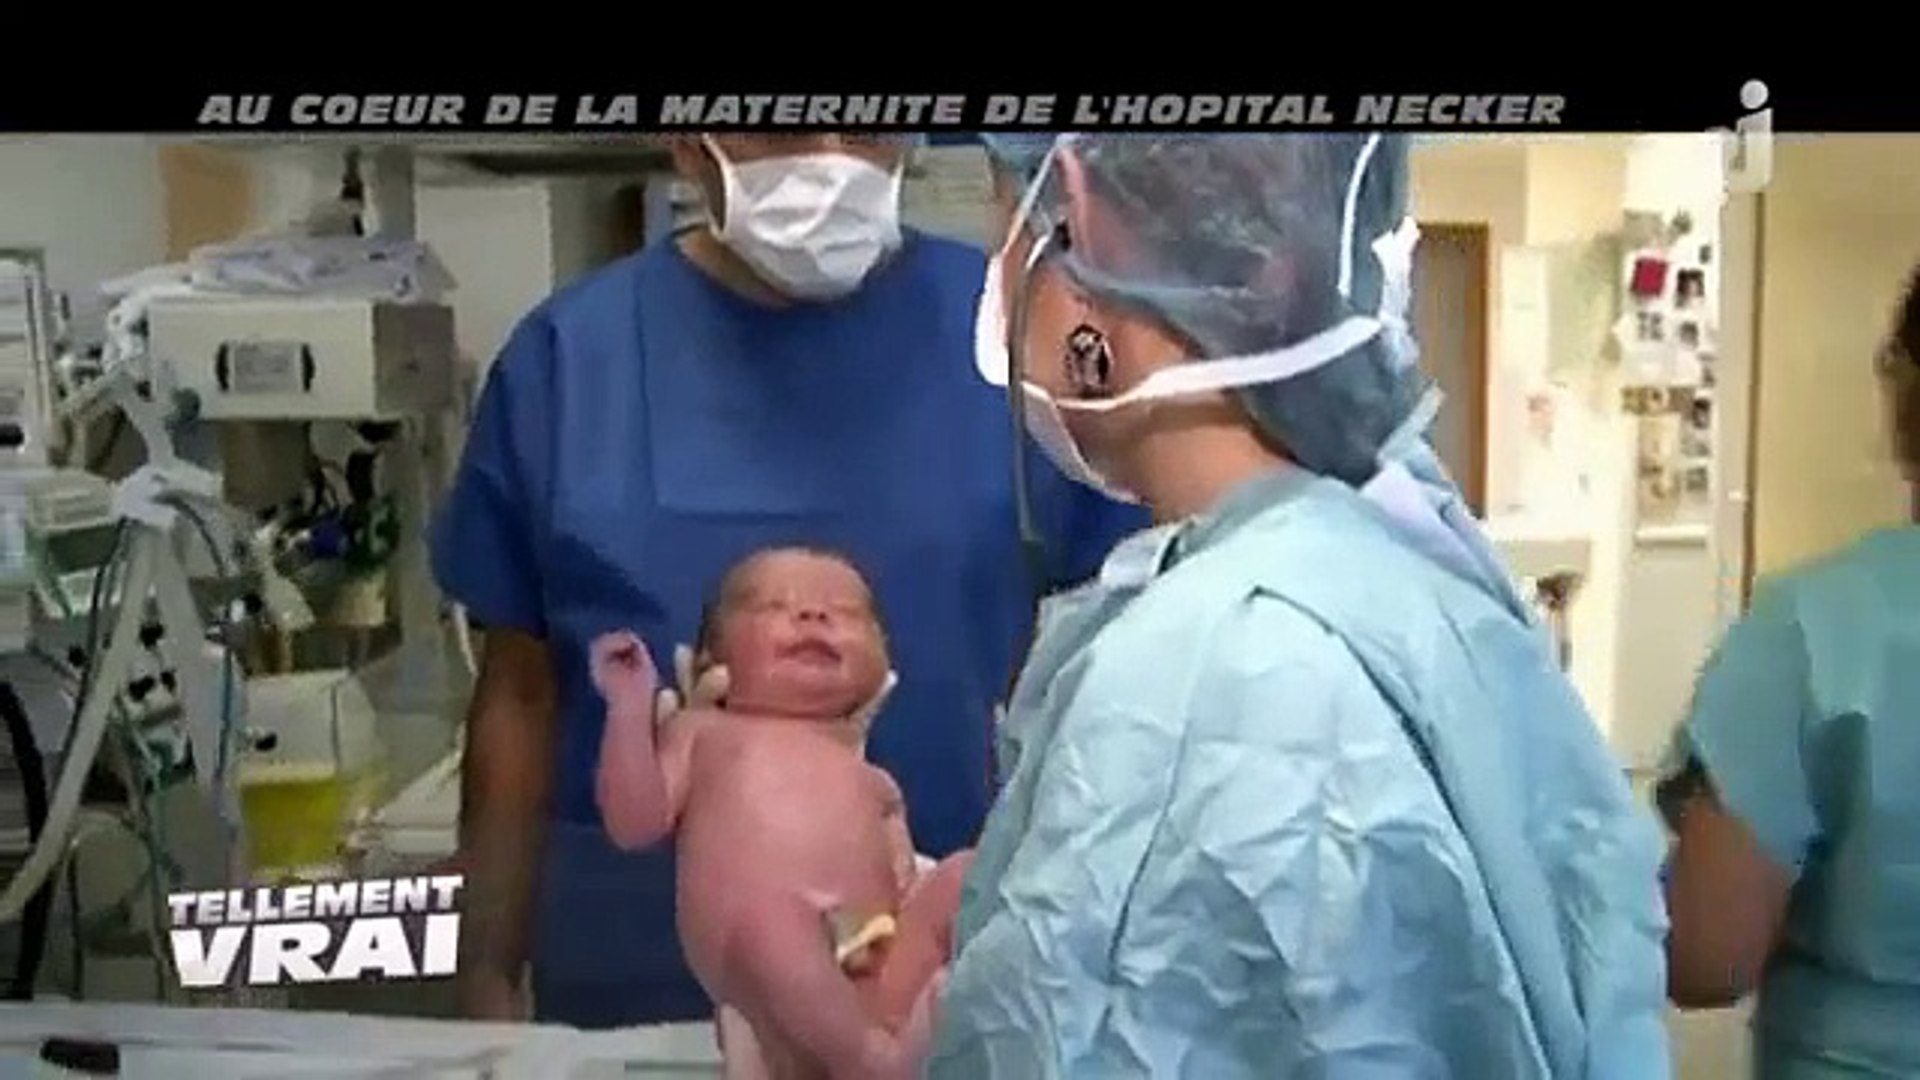 Tellement vrai - Au coeur de la maternite de lhopital necker - Dailymotion  Video